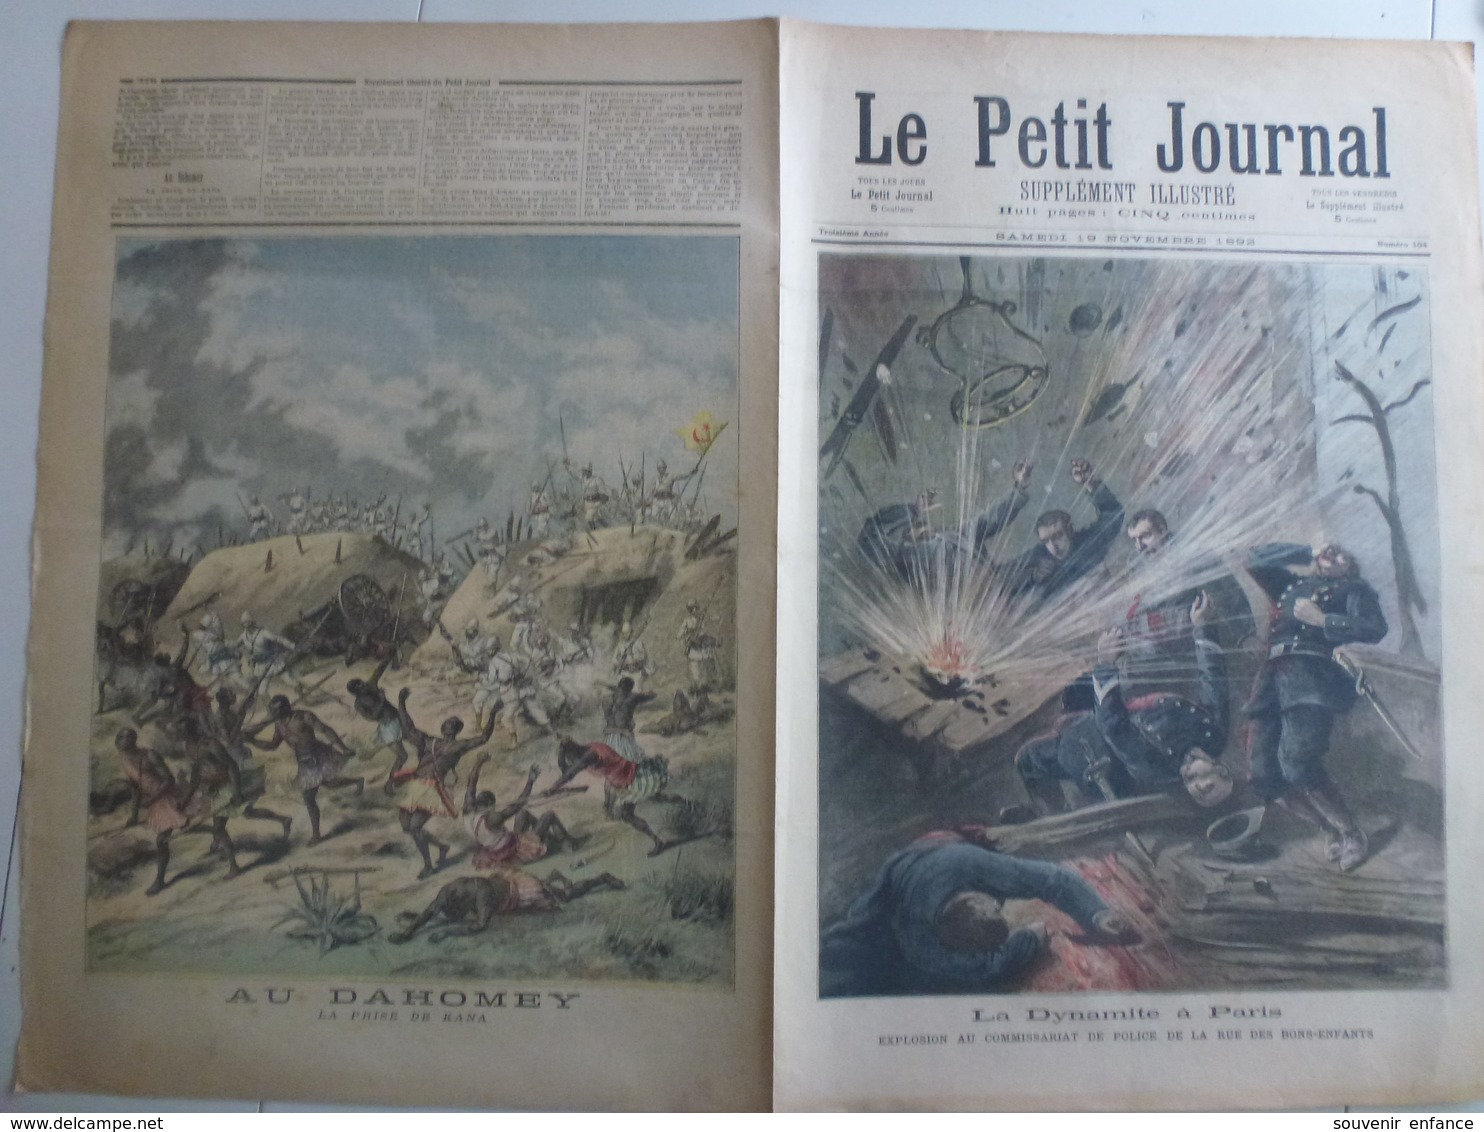 Journal Le Petit Journal 104 19 Novembre 1892 La Dynamite à Paris Rue Des Bons Enfants Dahomey Prise De Kana - 1850 - 1899